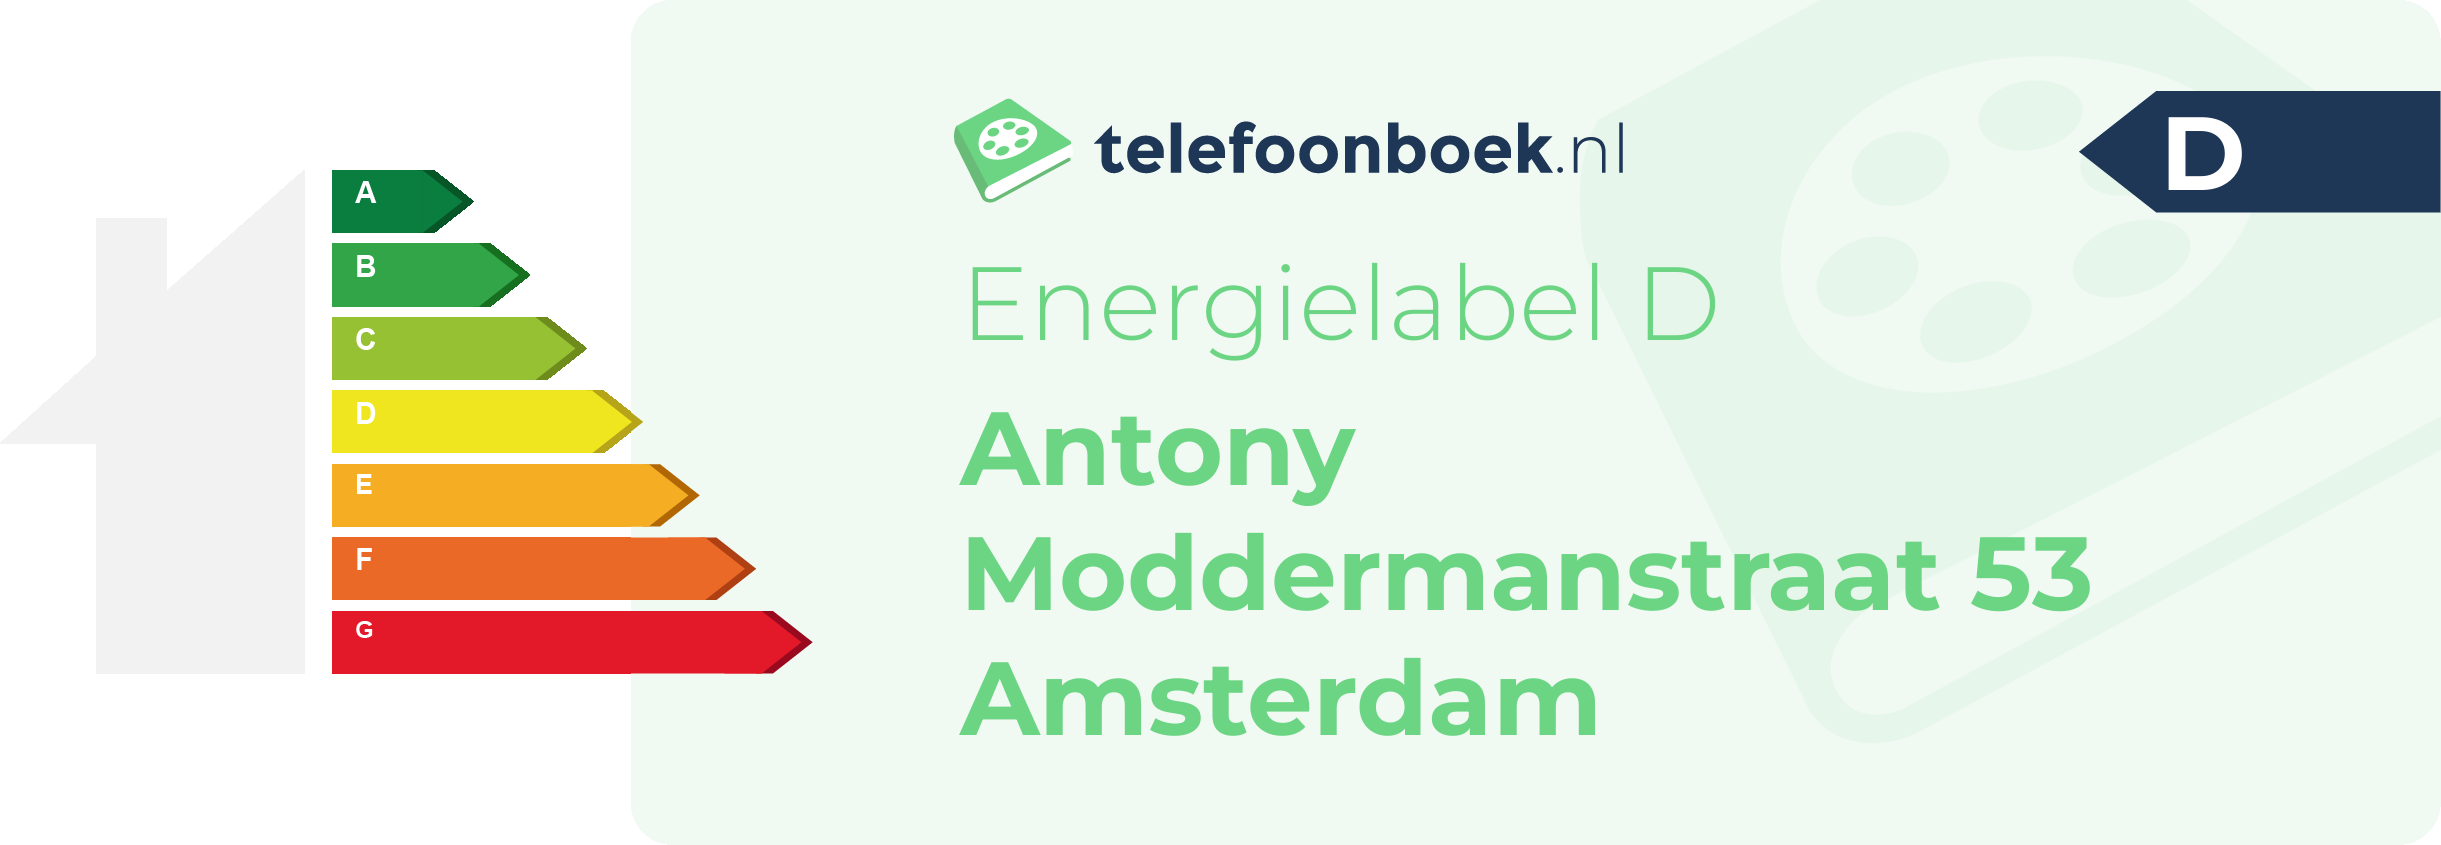 Energielabel Antony Moddermanstraat 53 Amsterdam